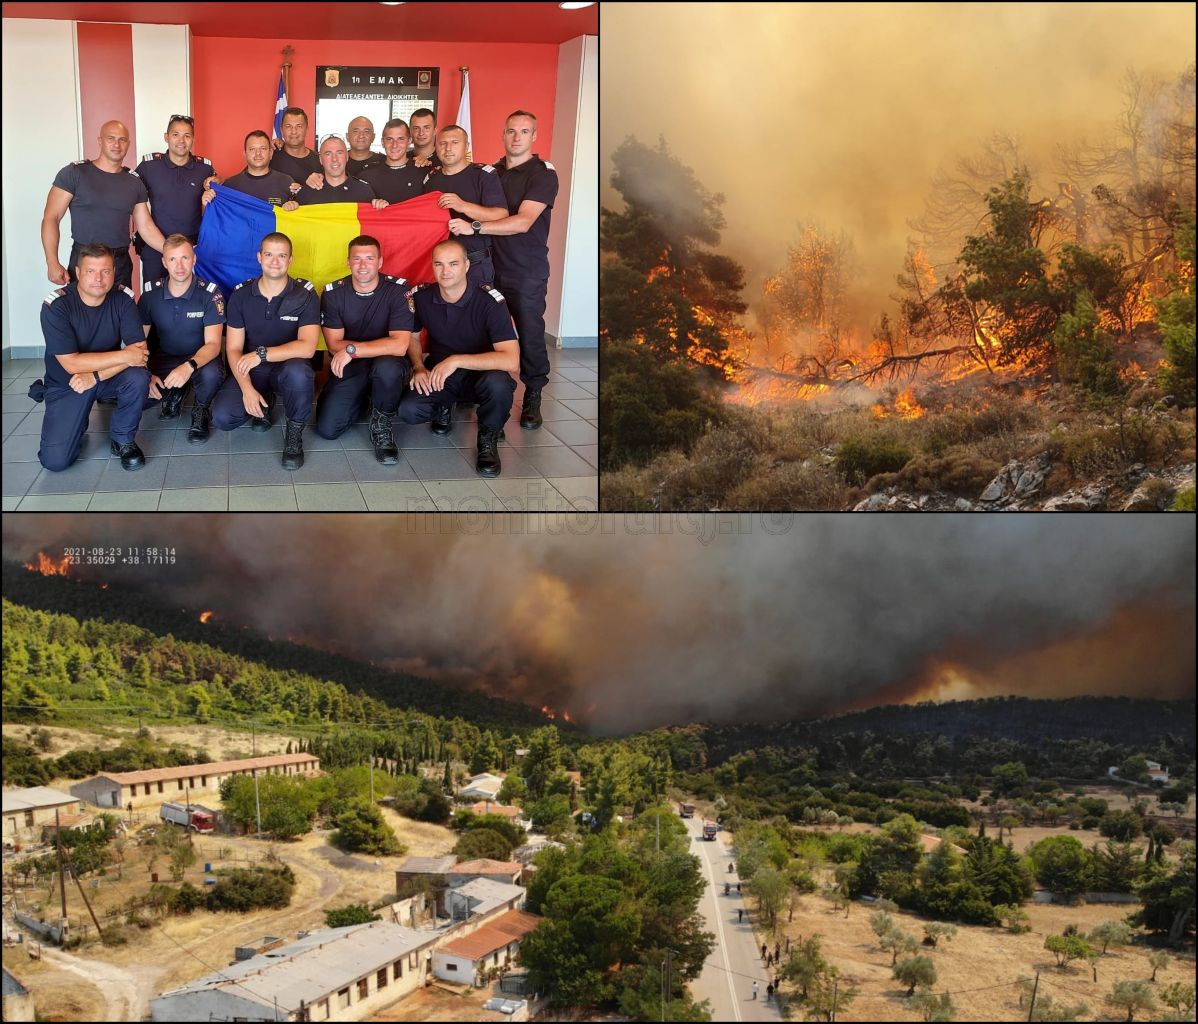 Incendii din Grecia/ Imagini surprinse de pompierii clujeni, plecați în misiune pentru a-i ajuta pe greci să stingă flăcările